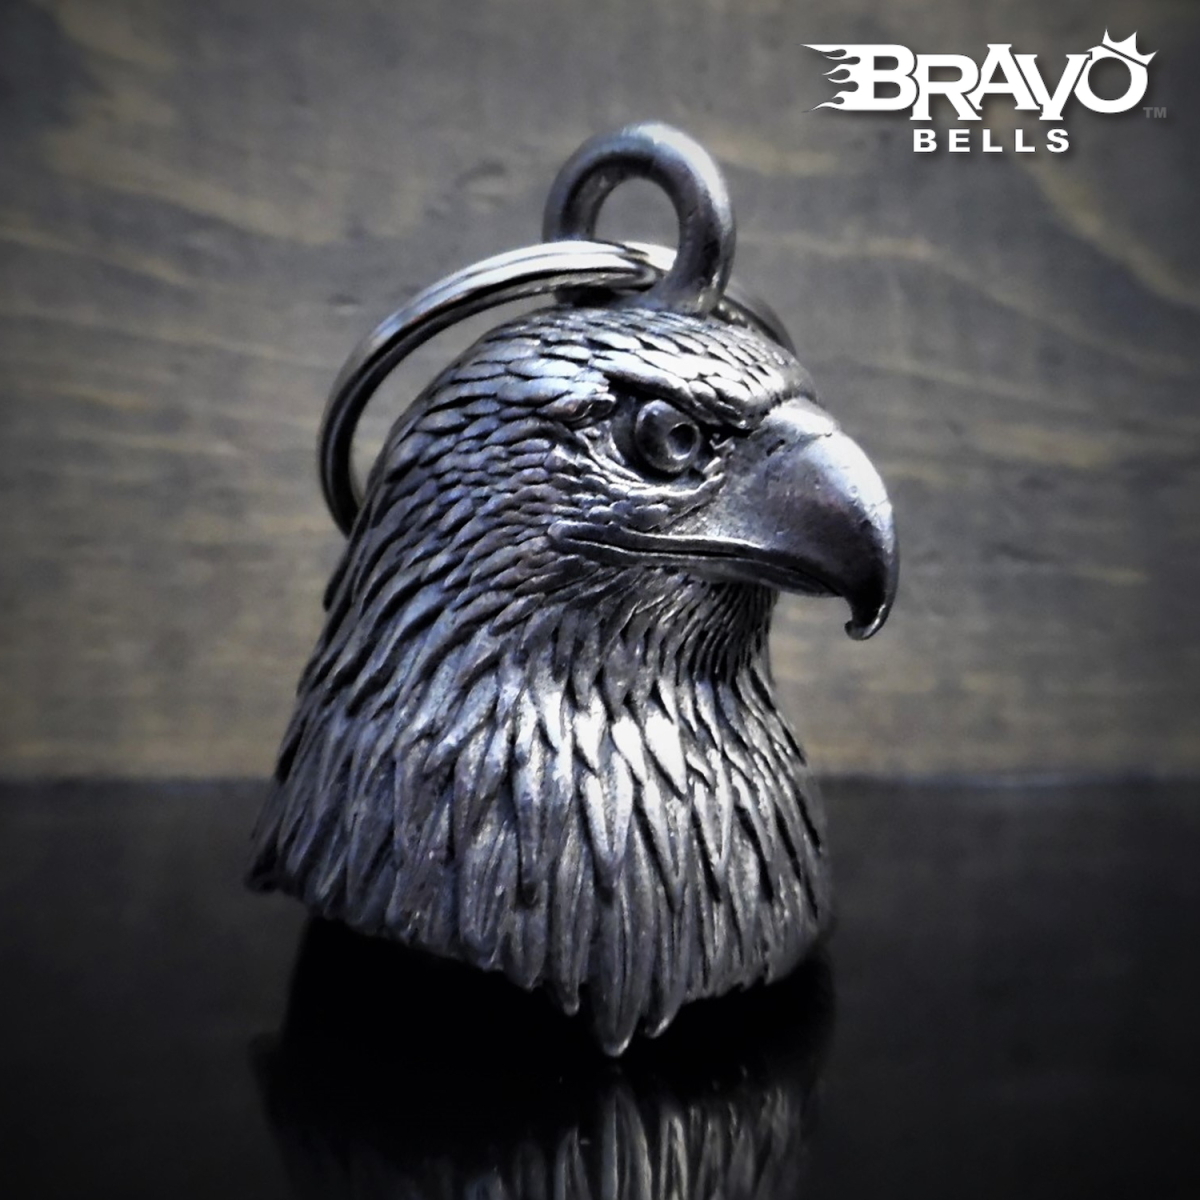 米国製 Bravo Bells 鷲 3D ベル [Eagle Head] Made in USA 魔除け お守り バイク オートバイ 鈴 アクセサリー ガーディアンベル ギフトに!_画像1